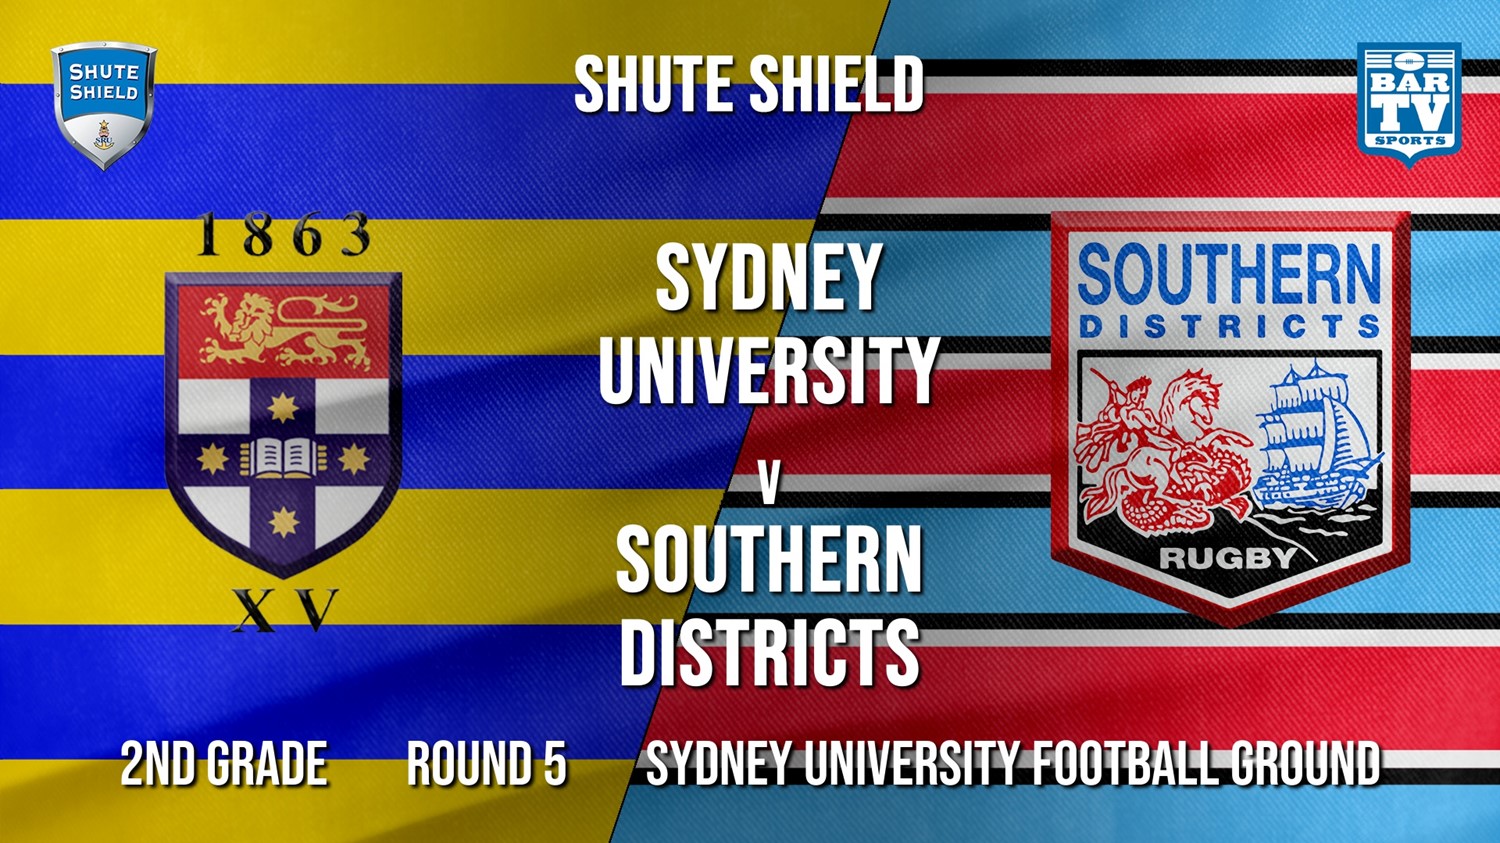 Shute Shield Round 5 - 2nd Grade - Sydney University v Southern Districts Minigame Slate Image